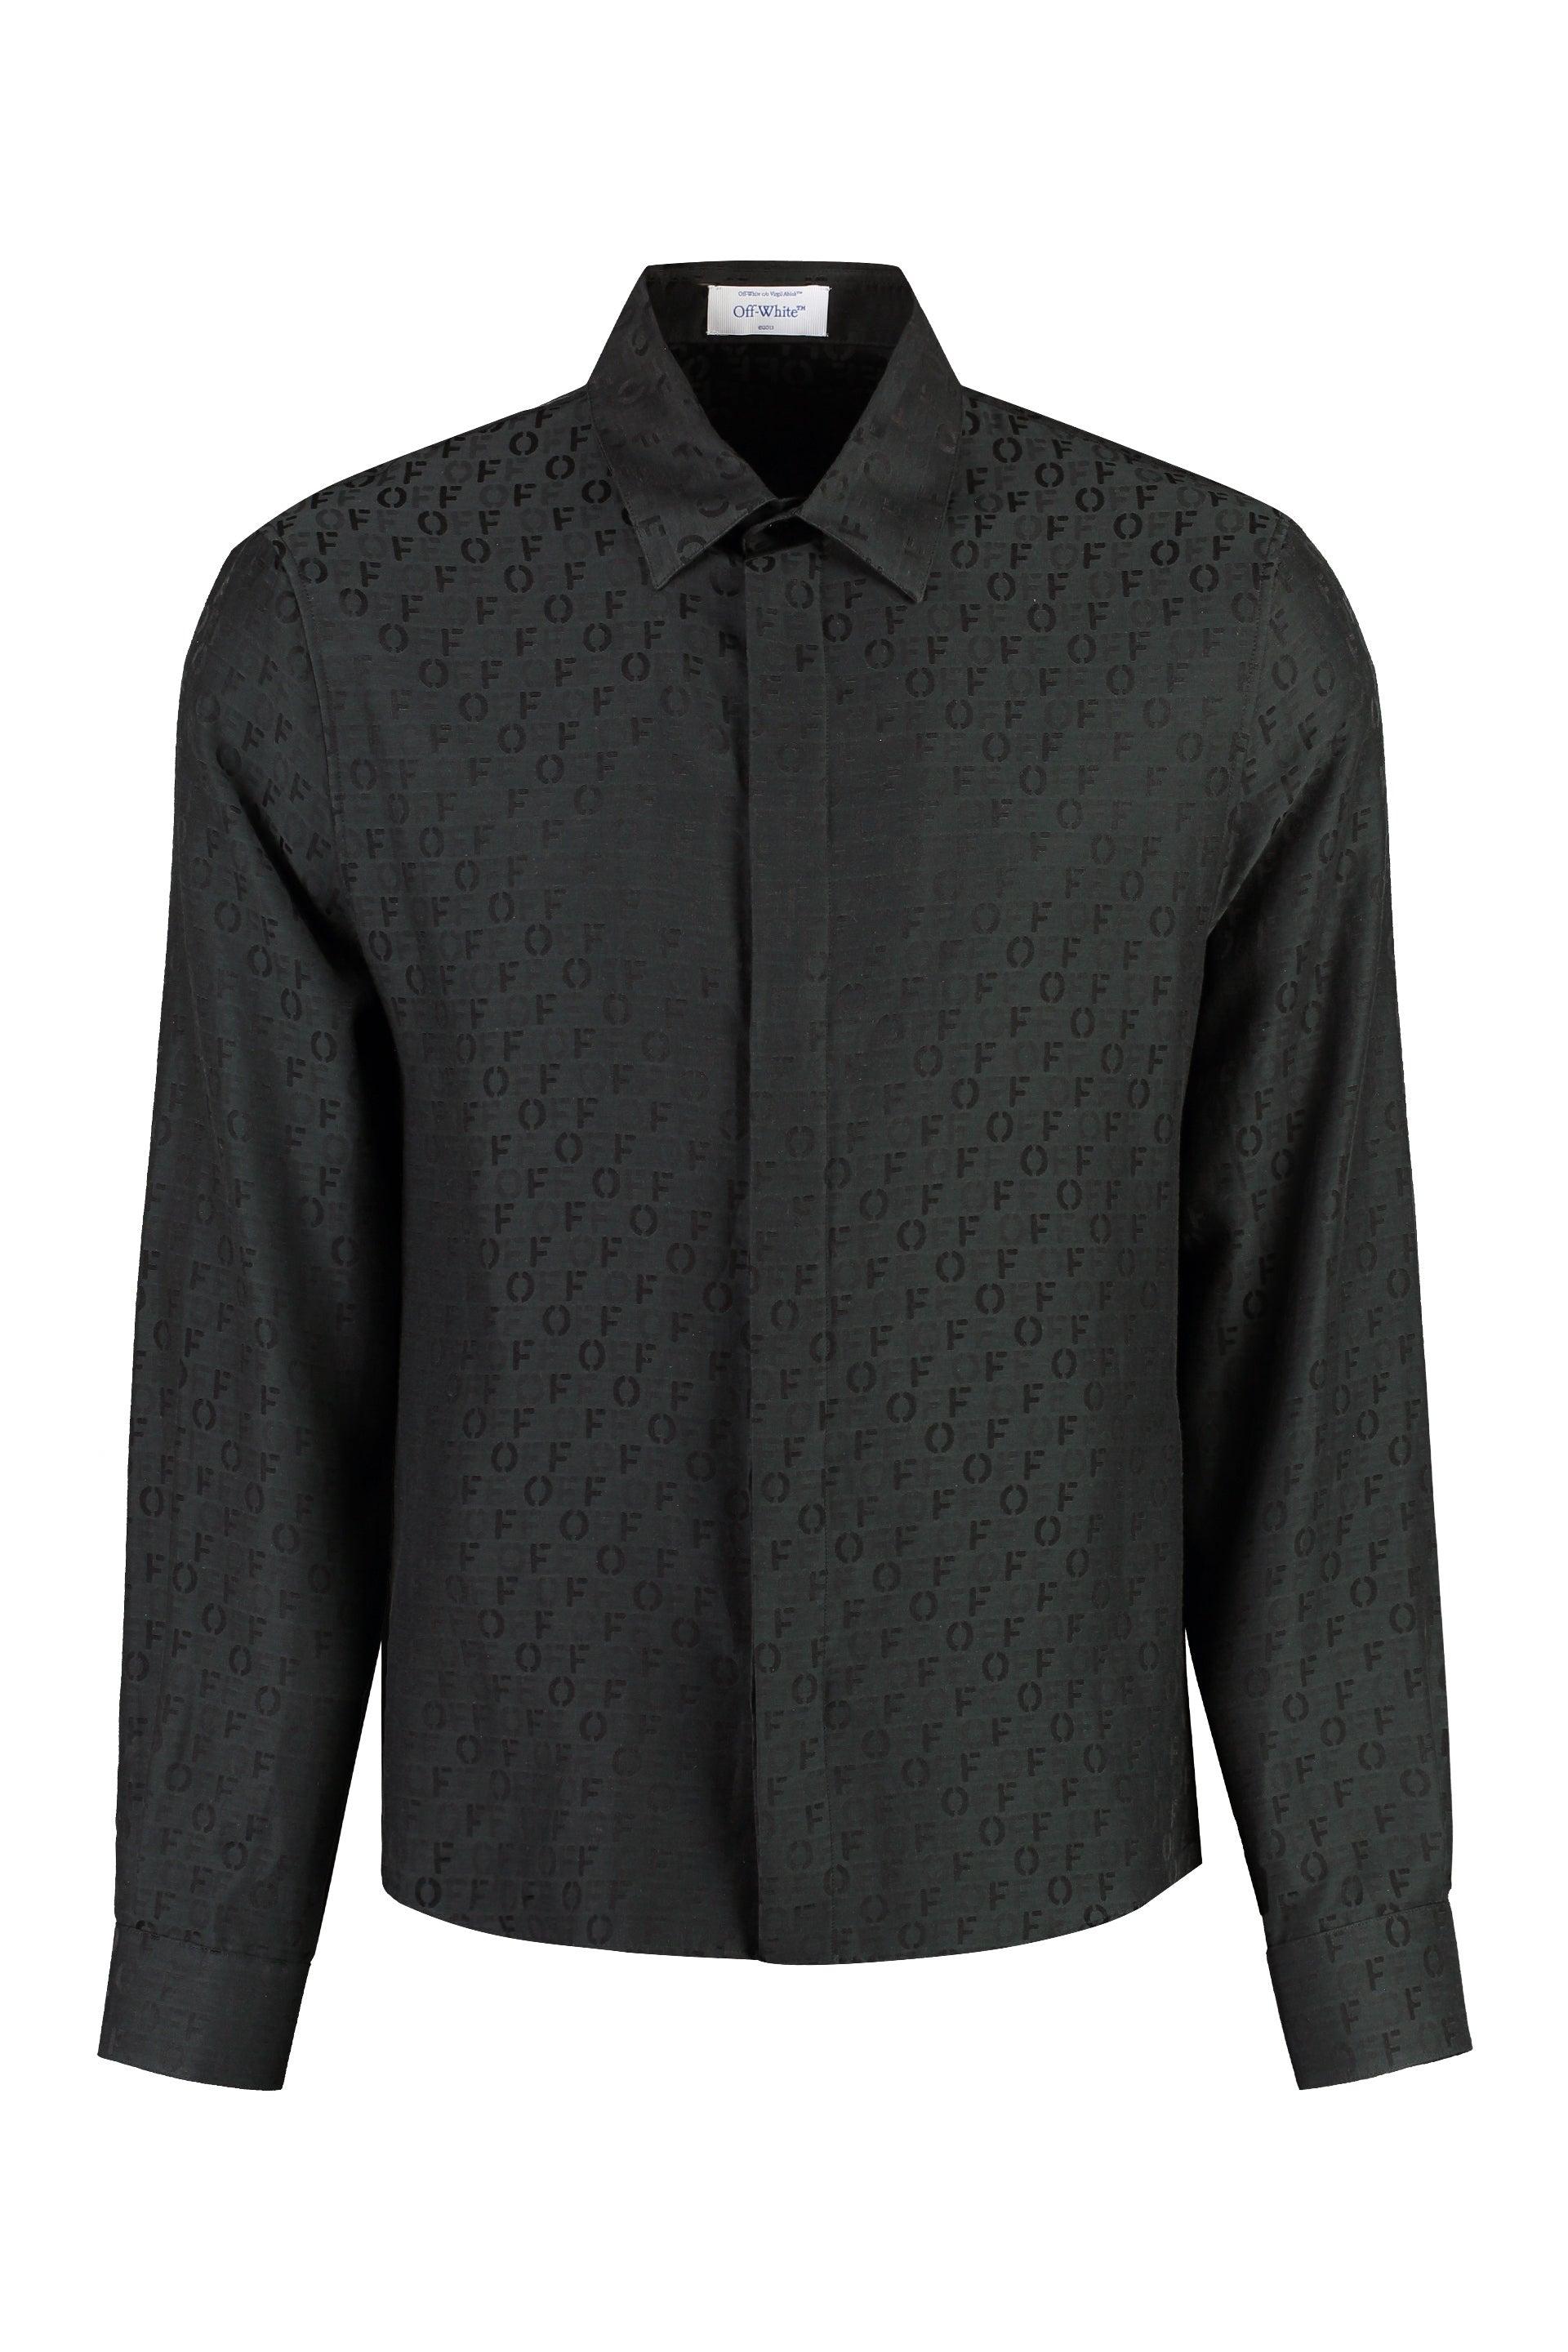 Off-White c/o Virgil Abloh Silk-cotton Blend Shirt in Black for Men | Lyst  UK